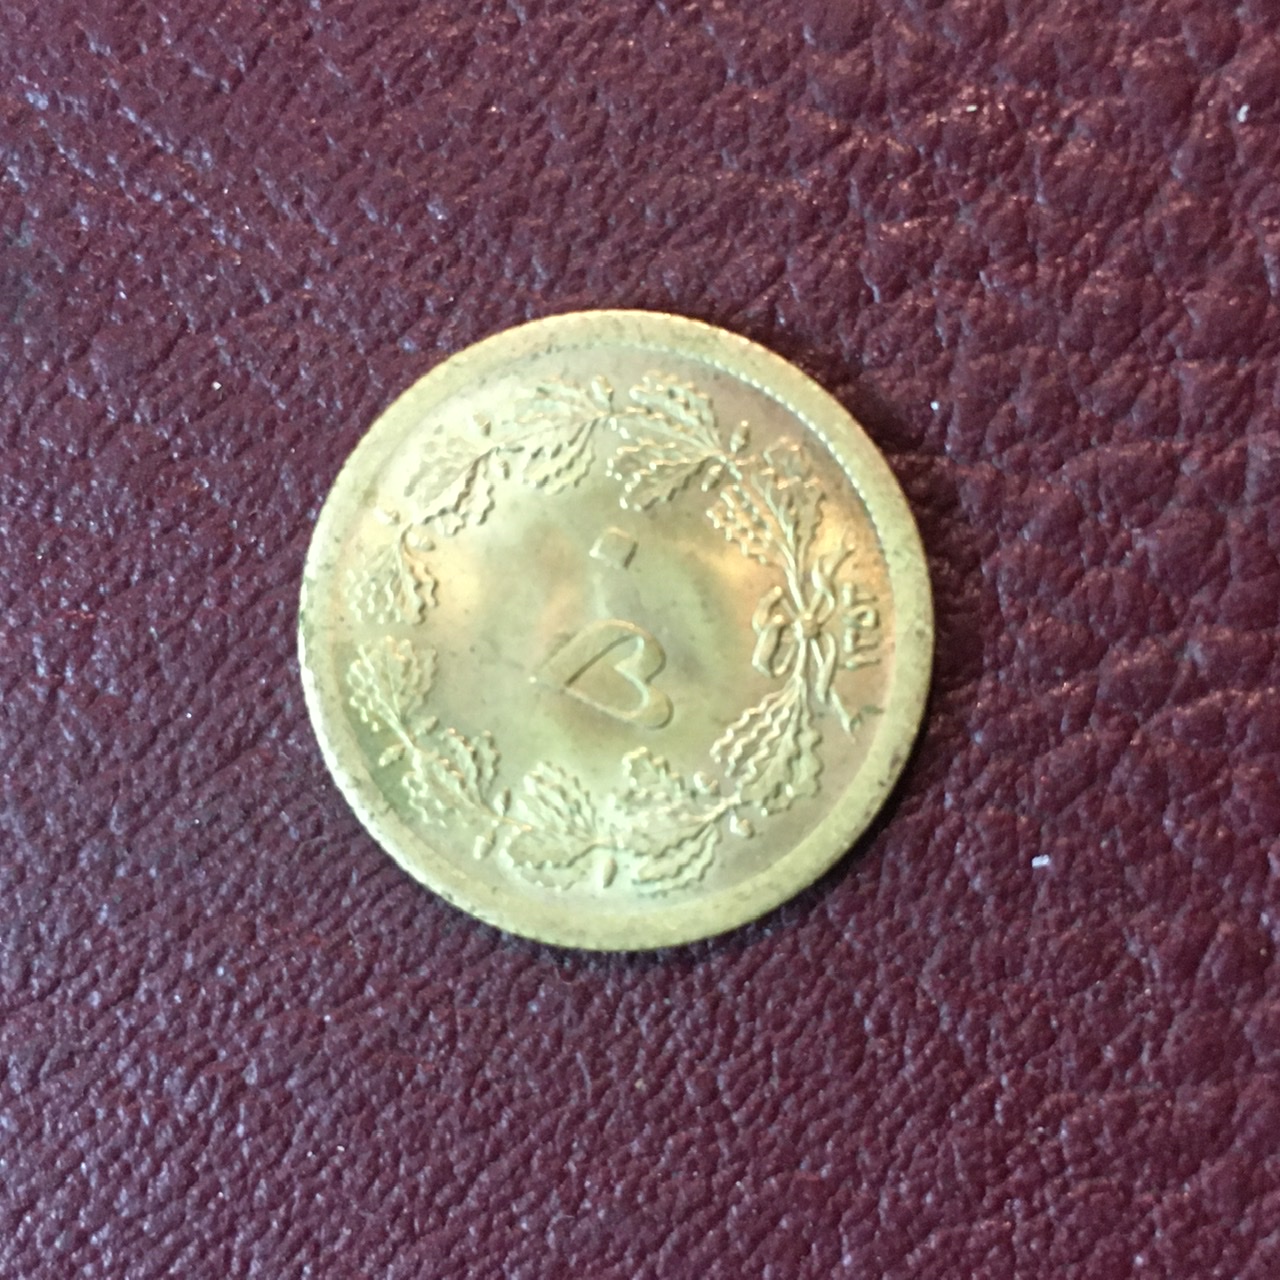 سکه ۵٠ دینار برنزی ١٣۵٣ نسبتا کمیاب با کیفیت بانکی لعابدار